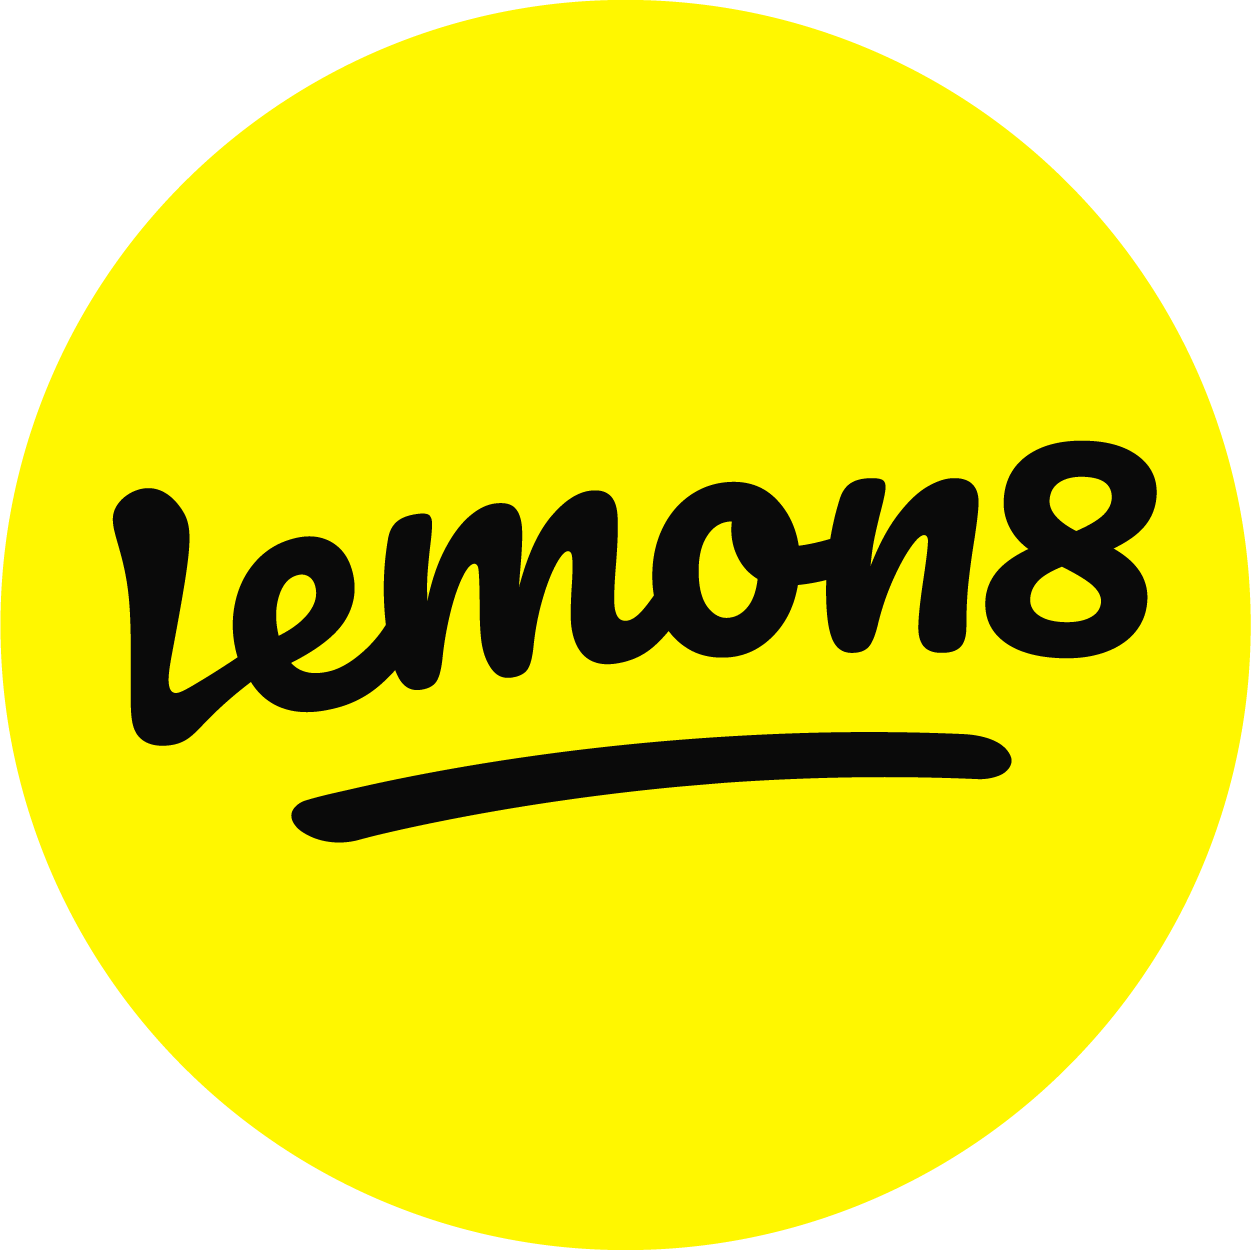 毎日に ハジける発見が出来るアプリ Lemon8 レモンエイト が誕生 誕生を記念して Lemon8で推したいアレコレ 開催 キャンペーンアンバサダーに りかりこ さんが就任 Bytedance株式会社 Lemon8チームのプレスリリース